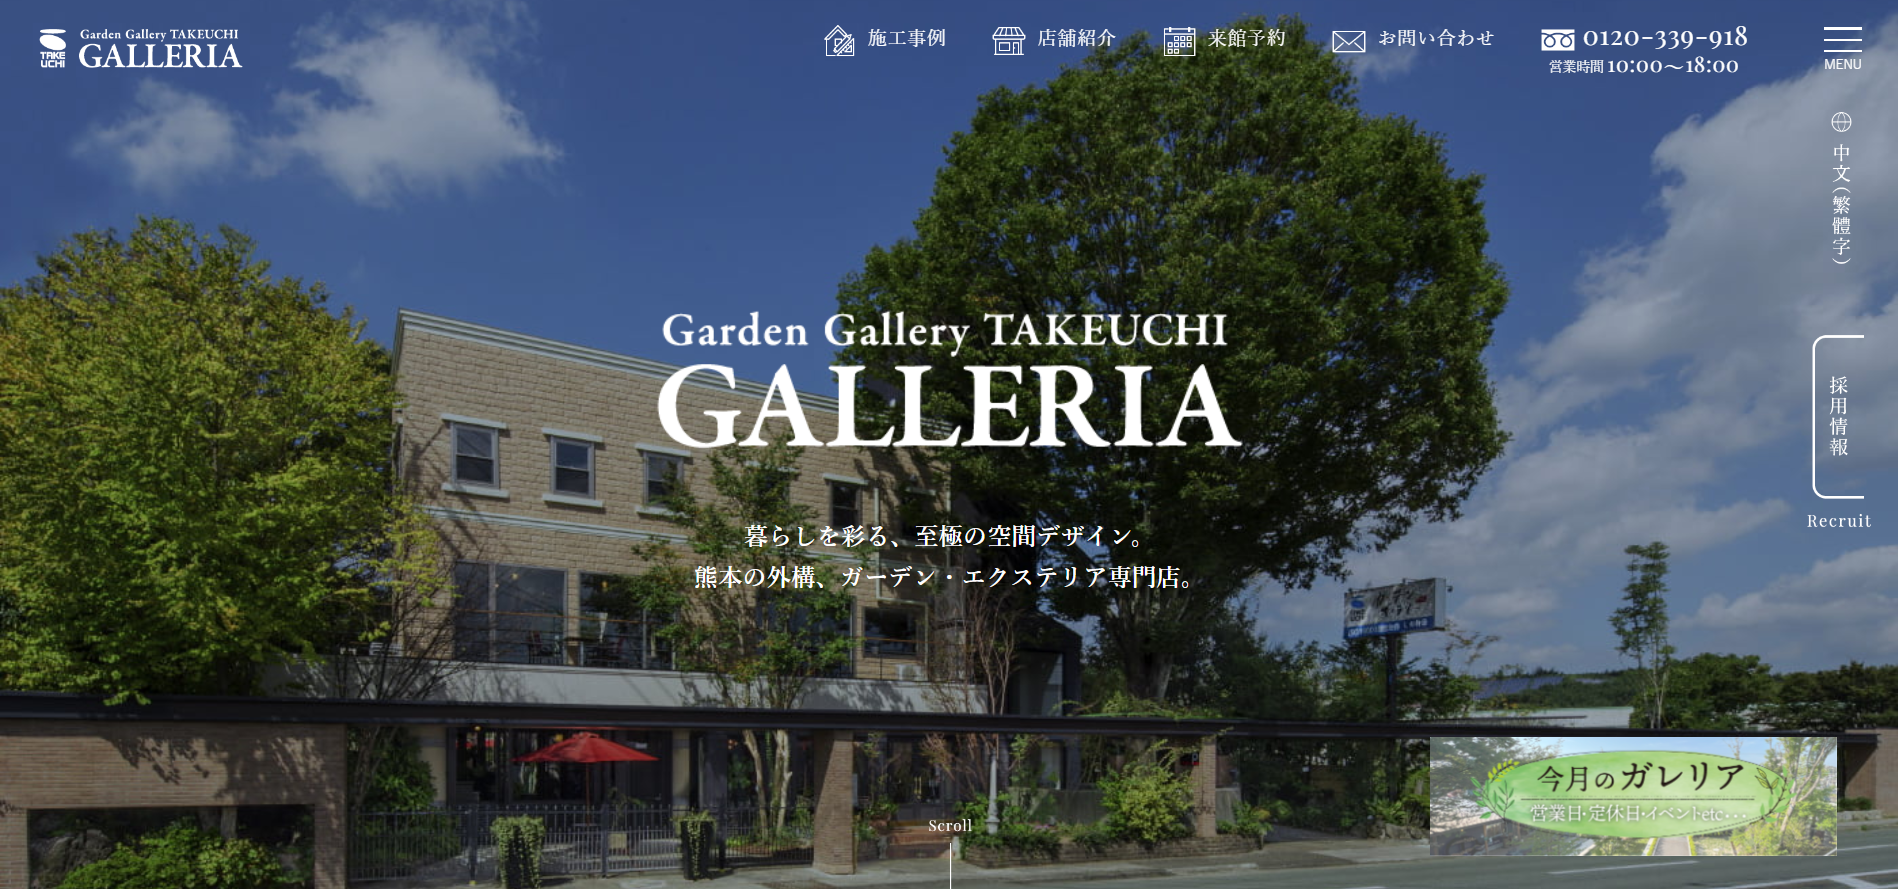 熊本県で評判のおすすめ外構業者ランキング 第5位 ガーデンギャラリー・タケウチ "GALLERIA"